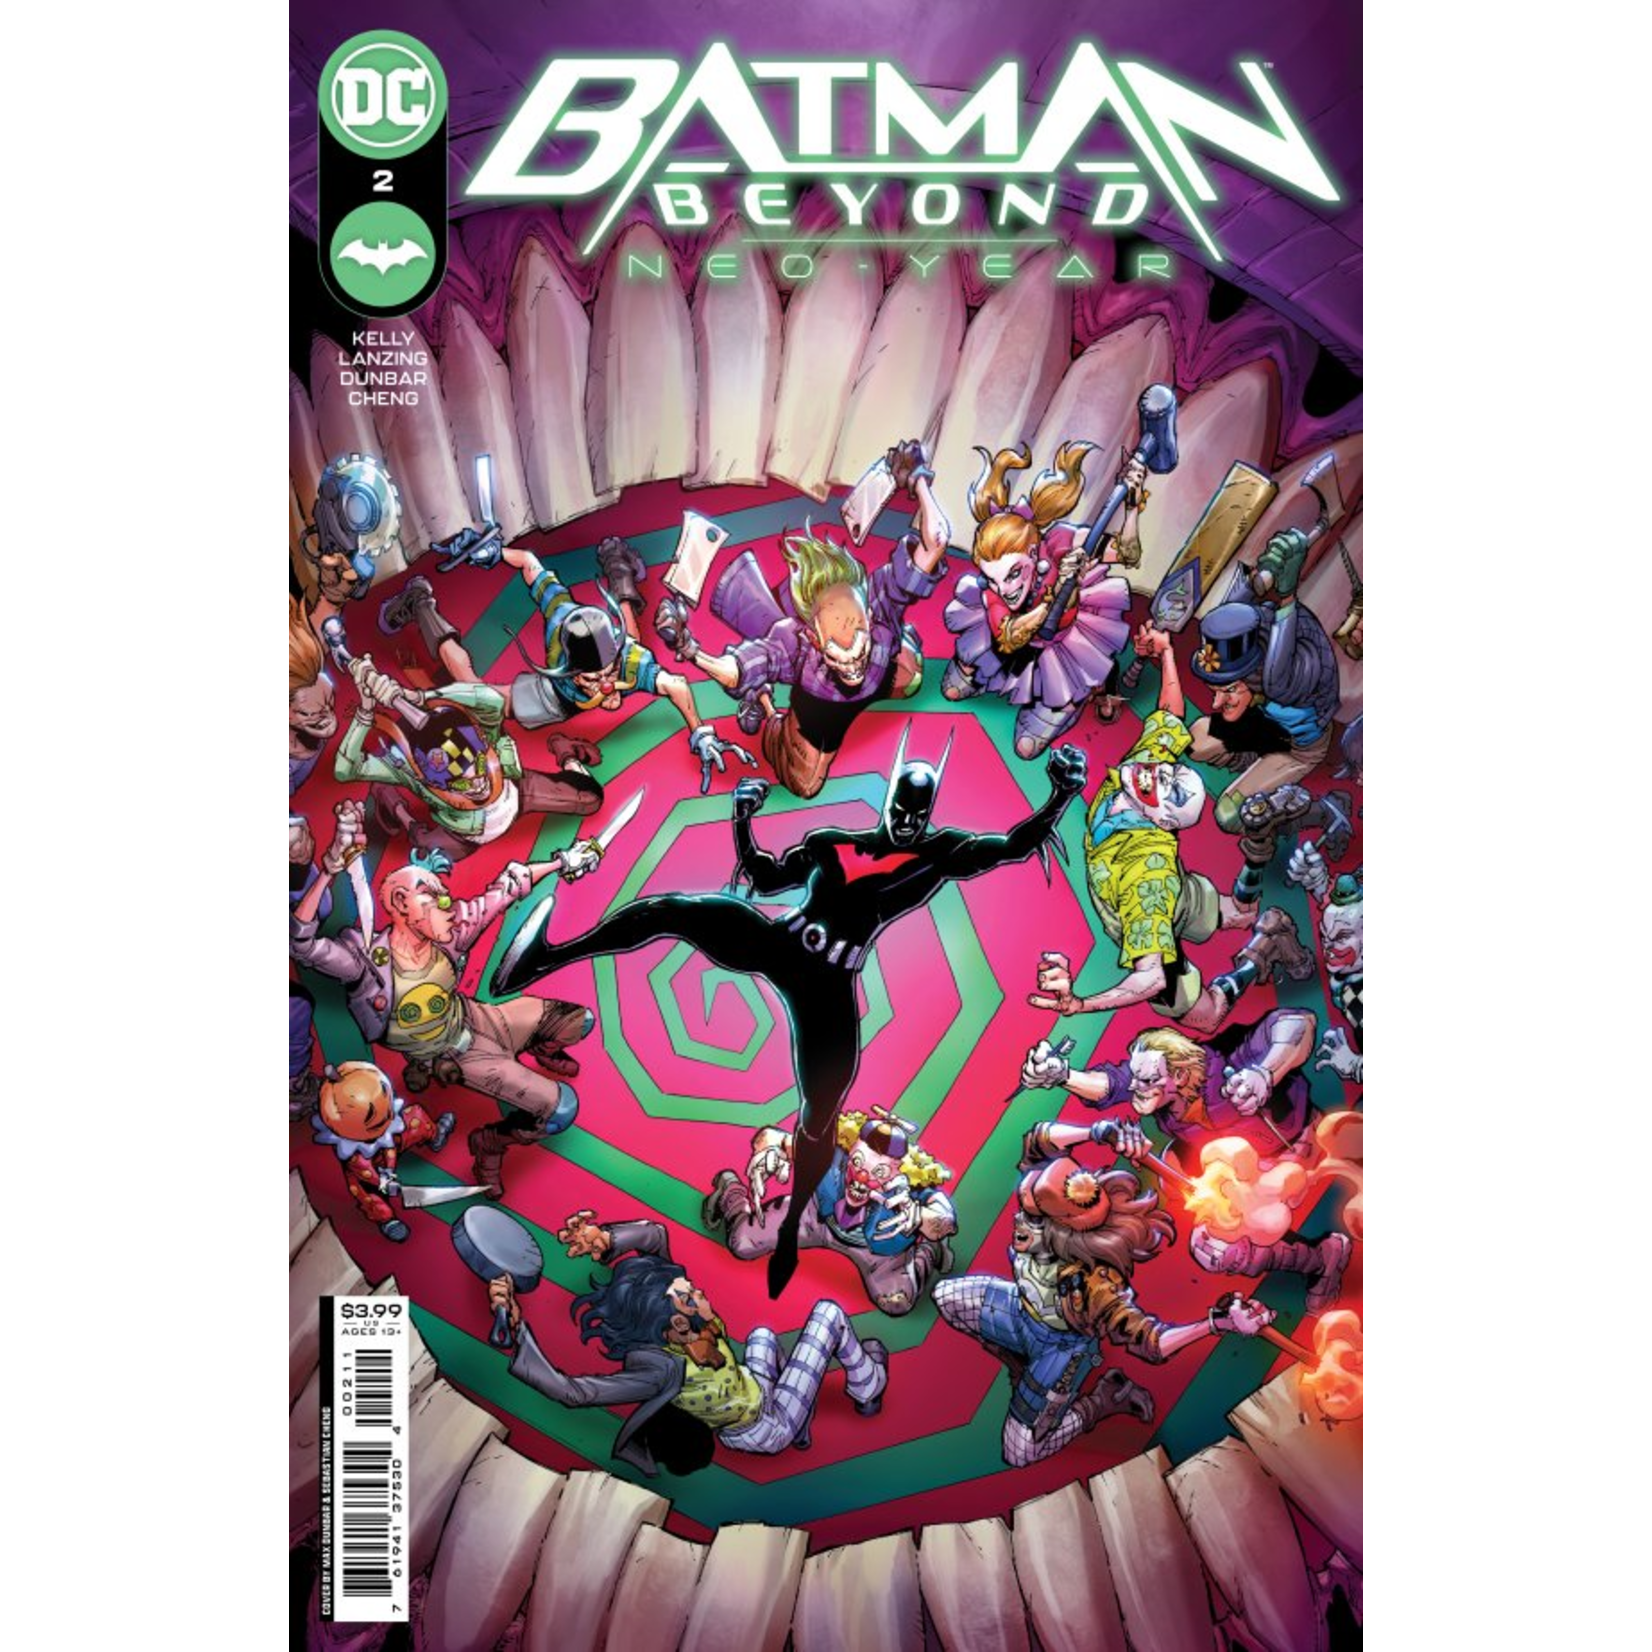 DC Comics BATMAN BEYOND NEO-YEAR #2 (OF 6) CVR A DUNBAR